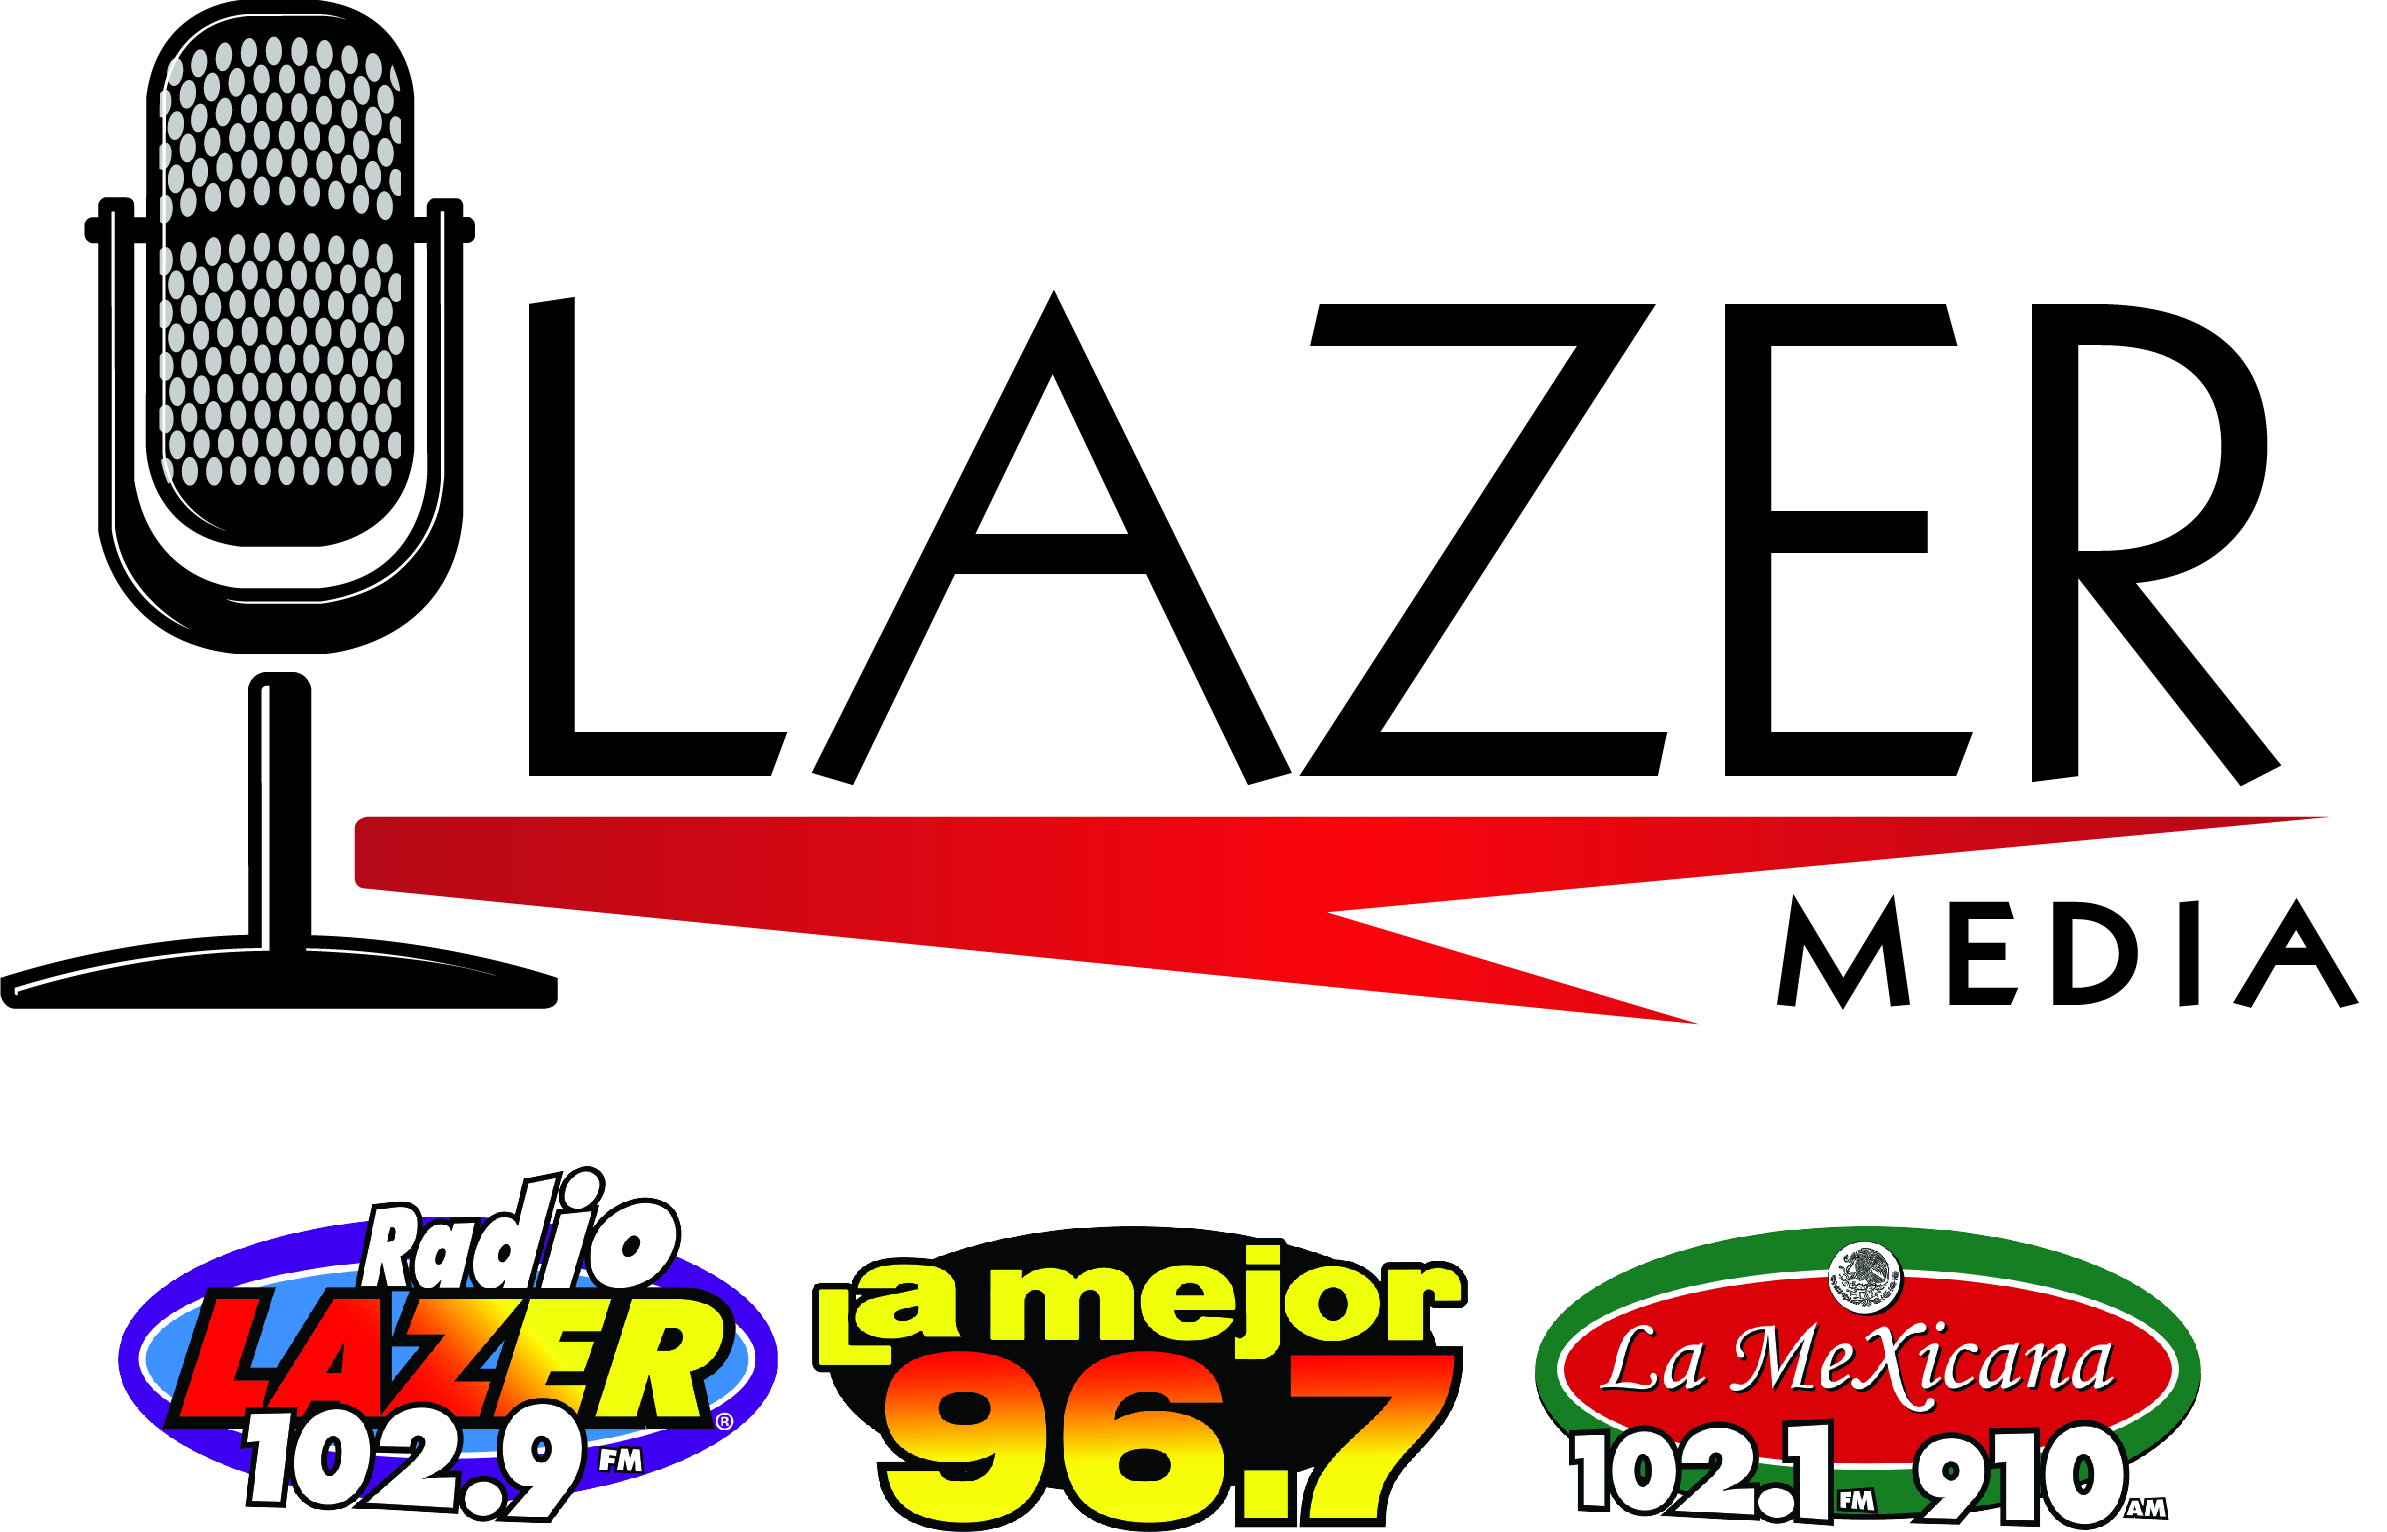 LAZER_MEDIA _LOGO3 stations